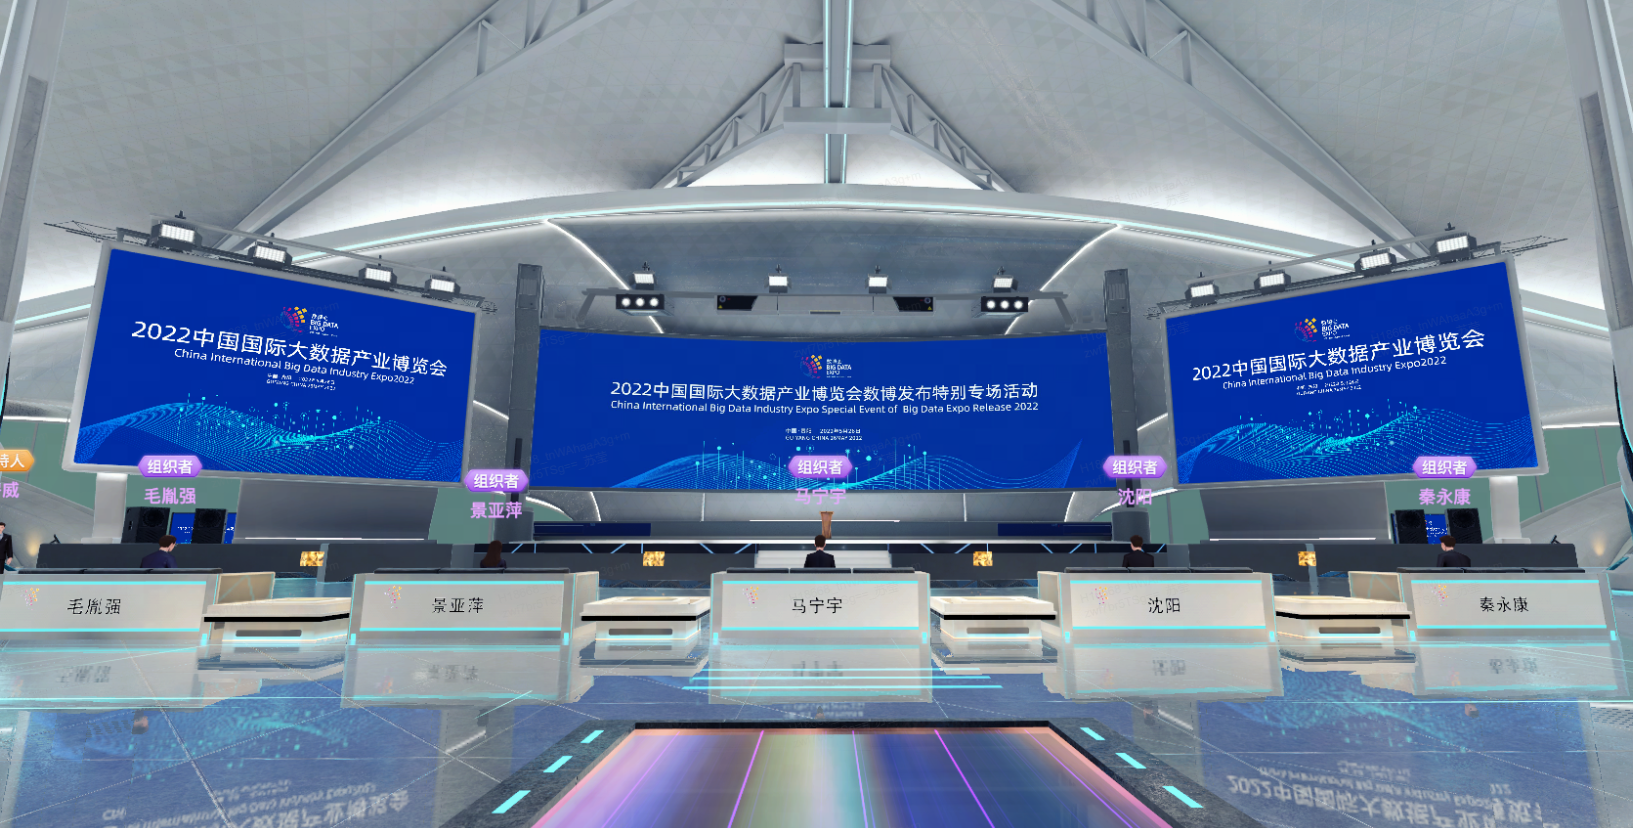 这是一个现代化的会议场景，中间有主讲台，周围配有多块大屏幕，显示着会议信息，整体设计科技感强，色调以蓝白为主。